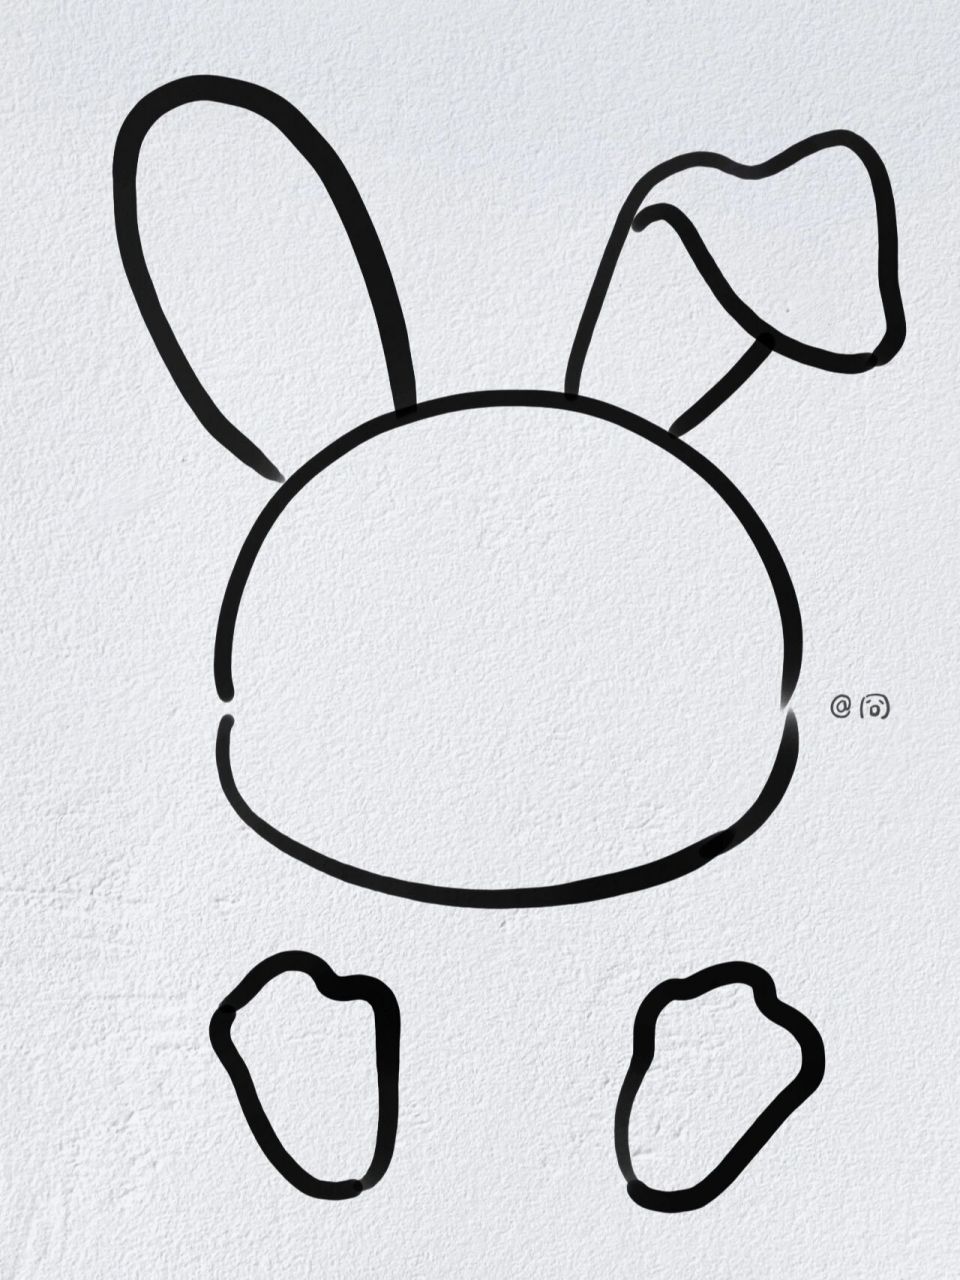 小白兔画法 简笔画图片